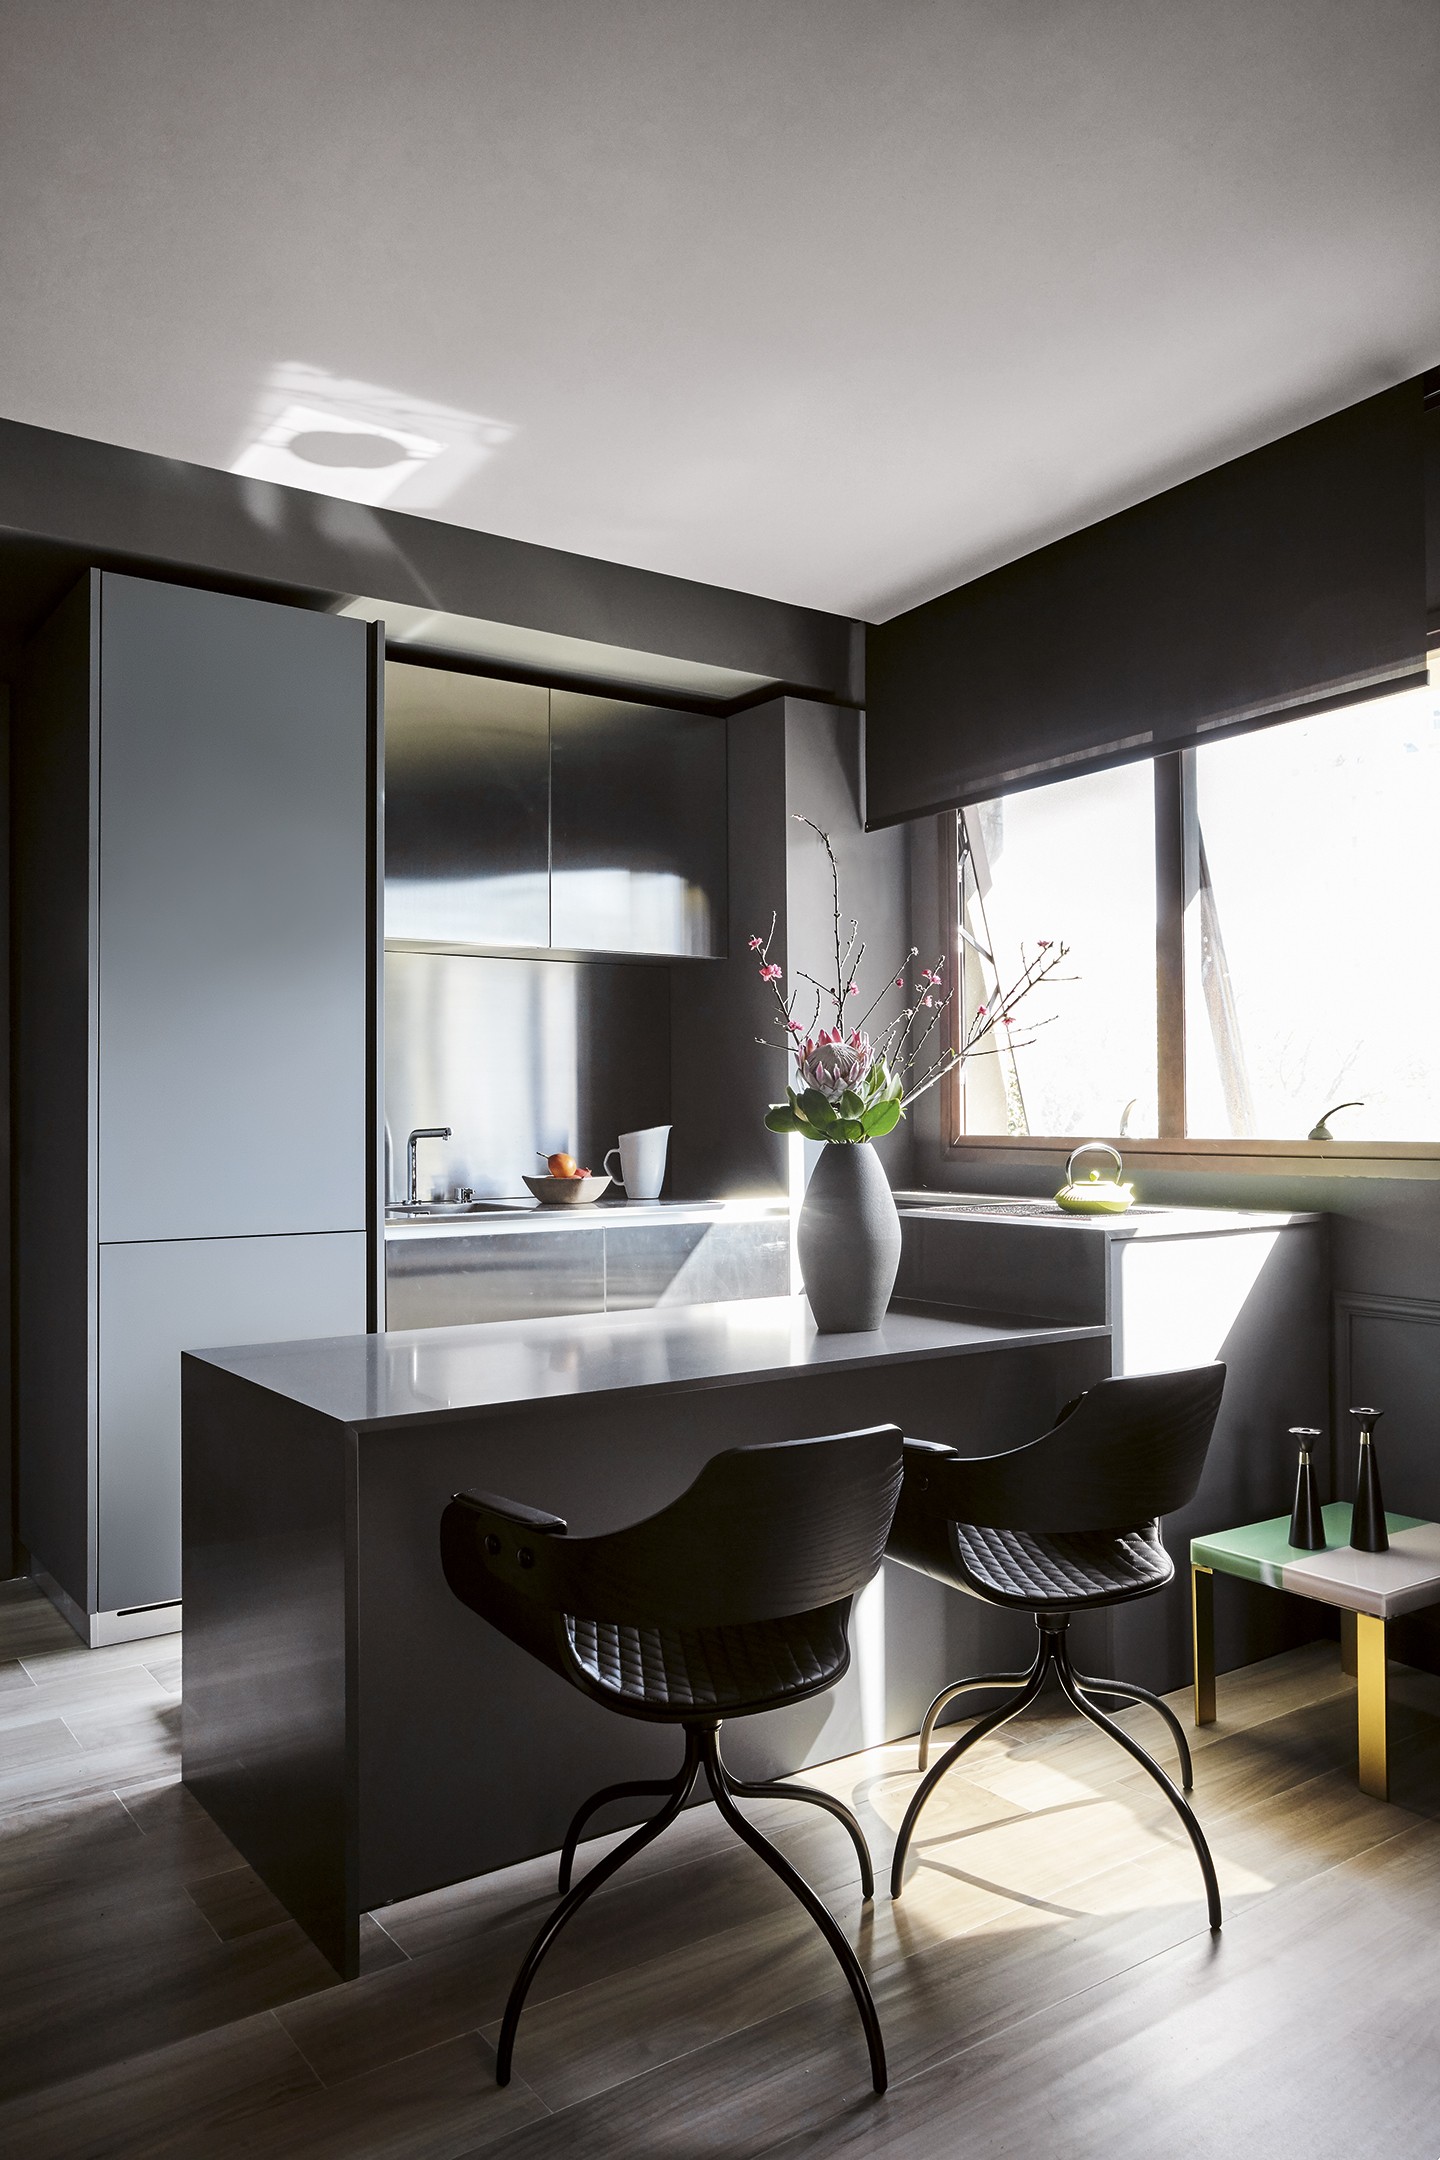 Apartamento de 46 m² tem paleta escura e móveis de design assinado (Foto: Ilana Bessler)